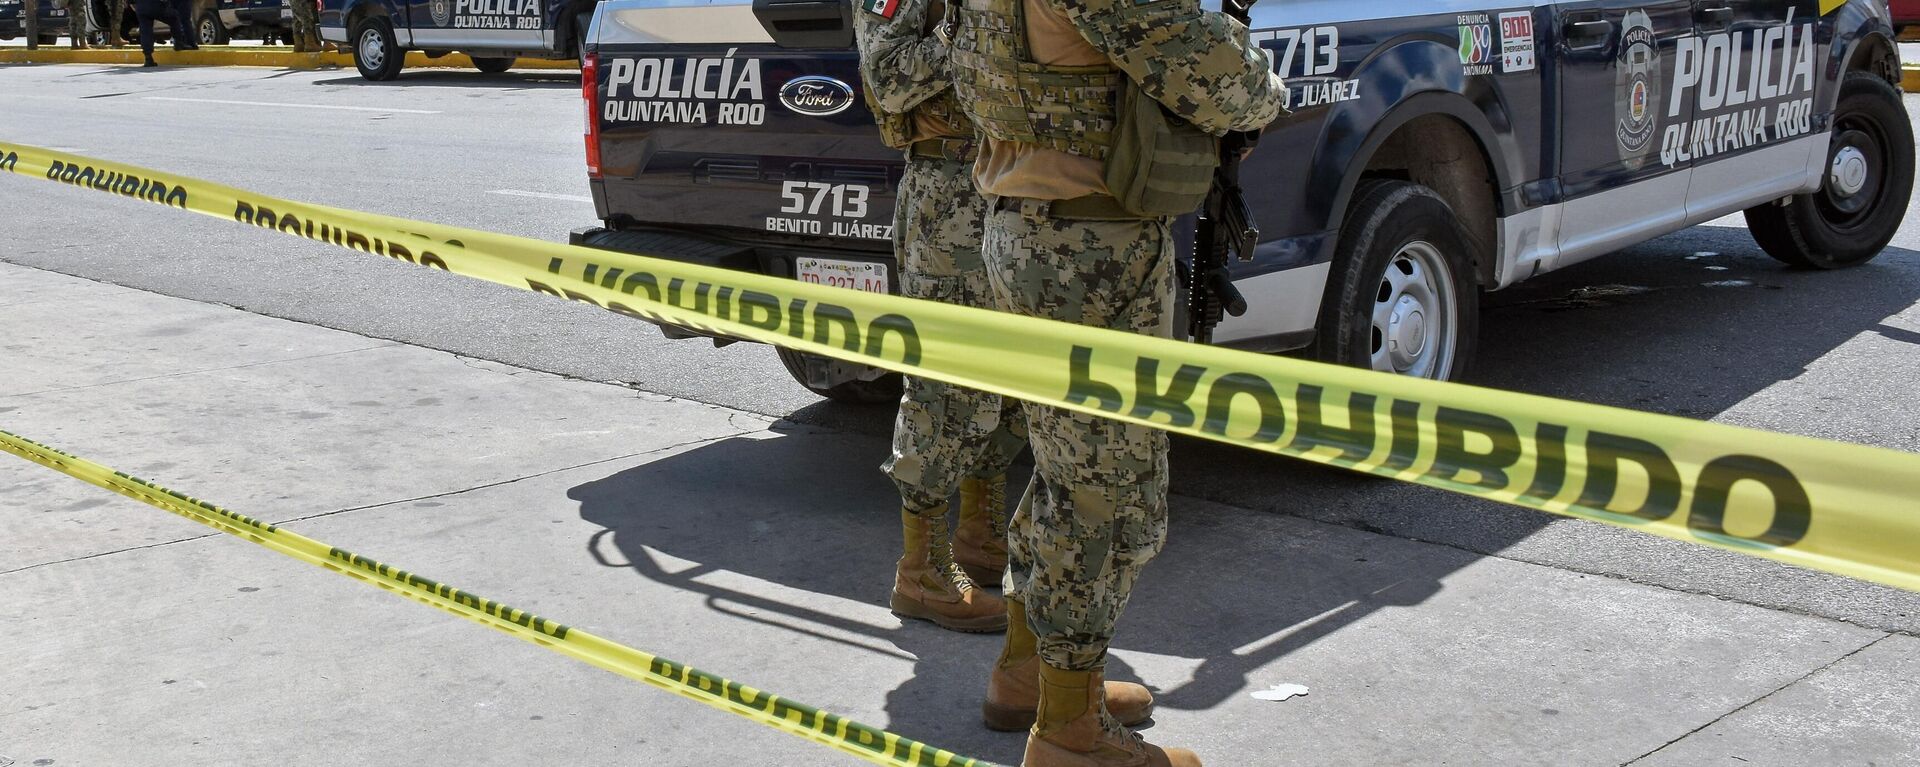 La cifra de homicidios en México llegó en 2022 a más de 32.000, de acuerdo con cifras preliminares del Inegi. - Sputnik Mundo, 1920, 25.07.2023